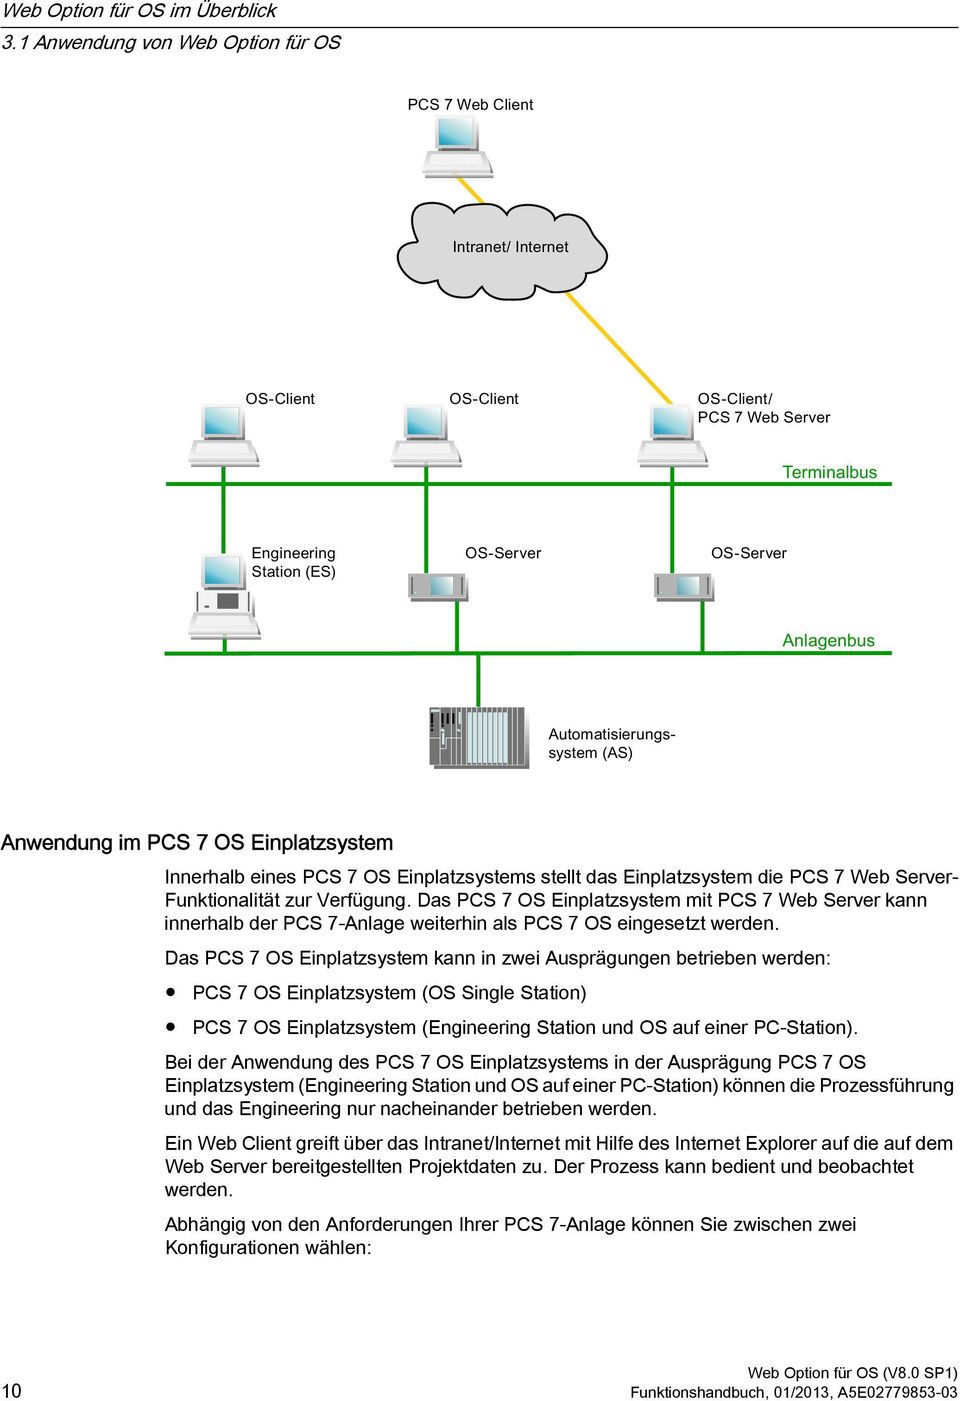 Das PCS 7 OS Einplatzsystem mit PCS 7 Web Server kann innerhalb der PCS 7-Anlage weiterhin als PCS 7 OS eingesetzt werden.